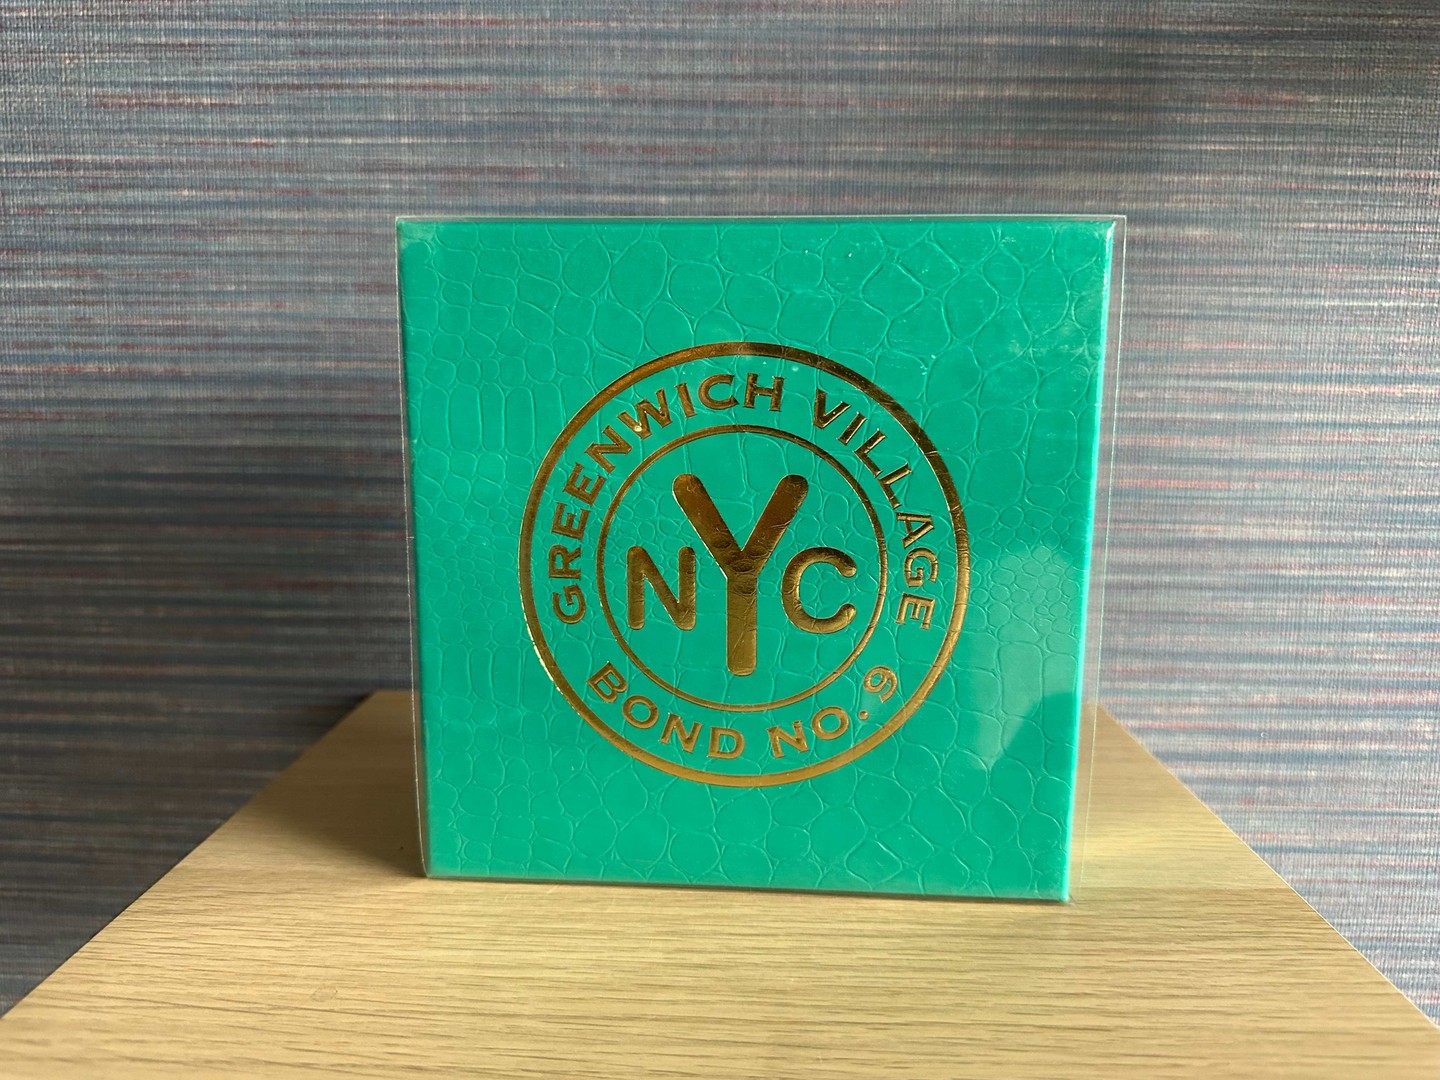 joyas, relojes y accesorios - Perfume Bond NO.9 NYC Greenwich Village Nuevo/ Original RD$ 17,500 NEG